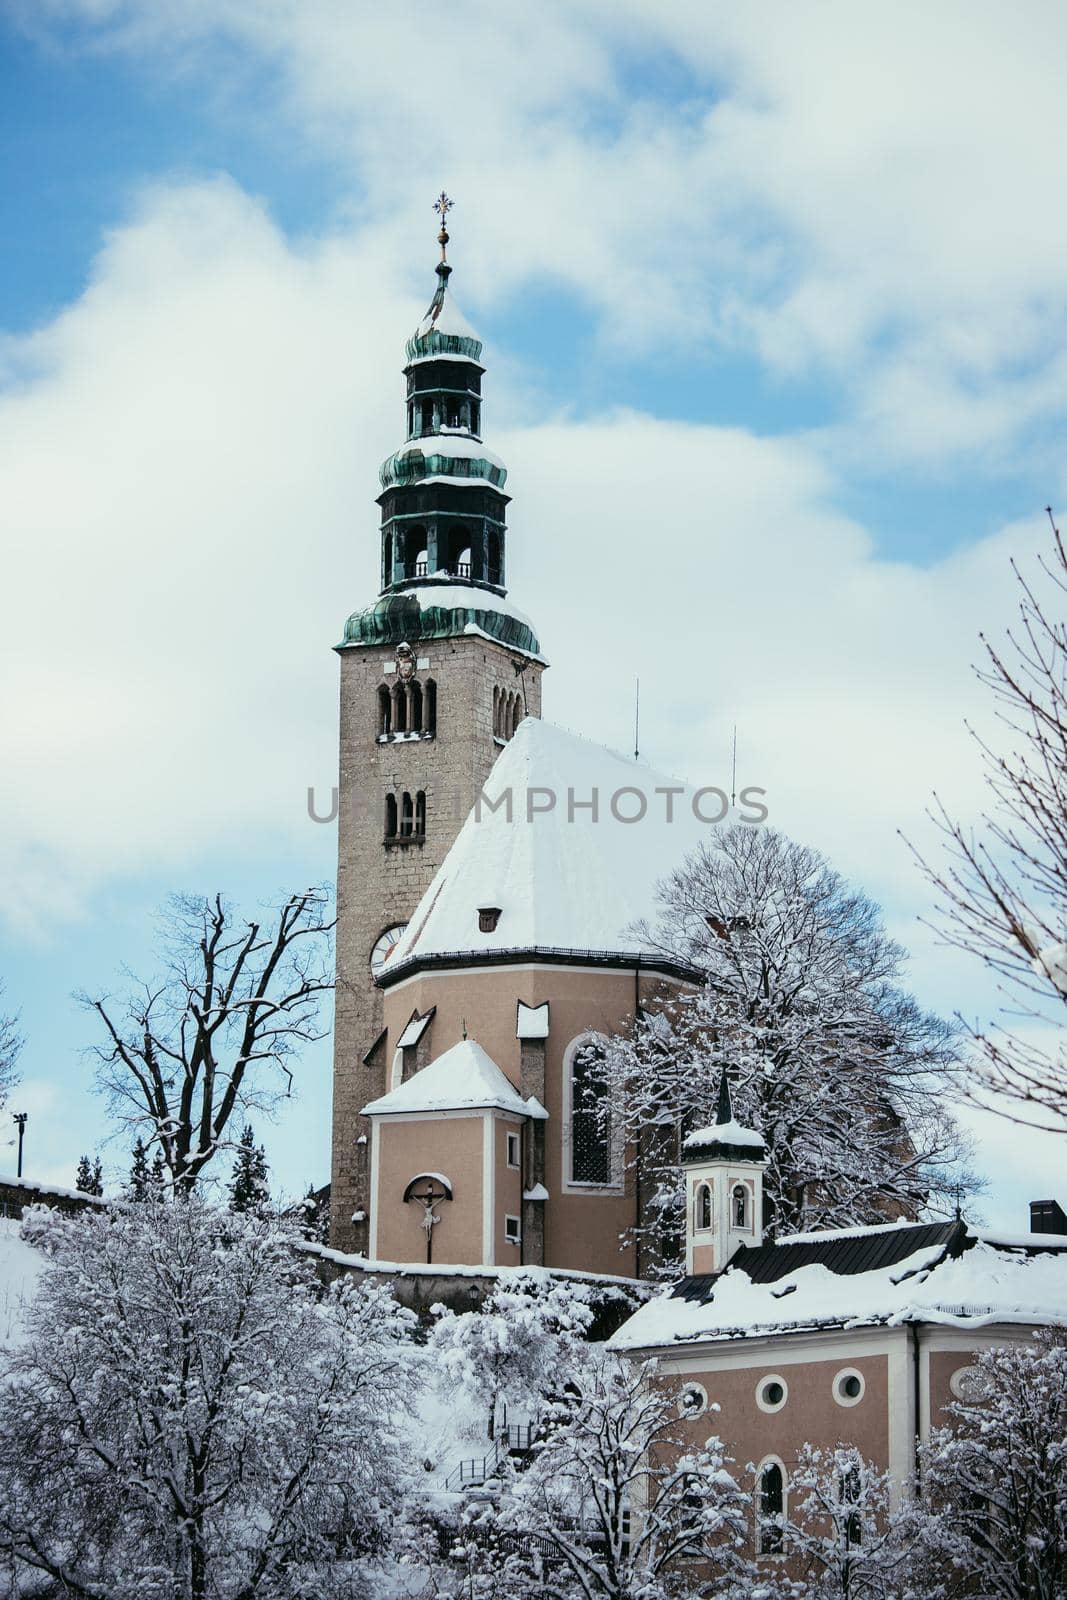 Snowy church in Salzburg, Müllnerkirche by Daxenbichler